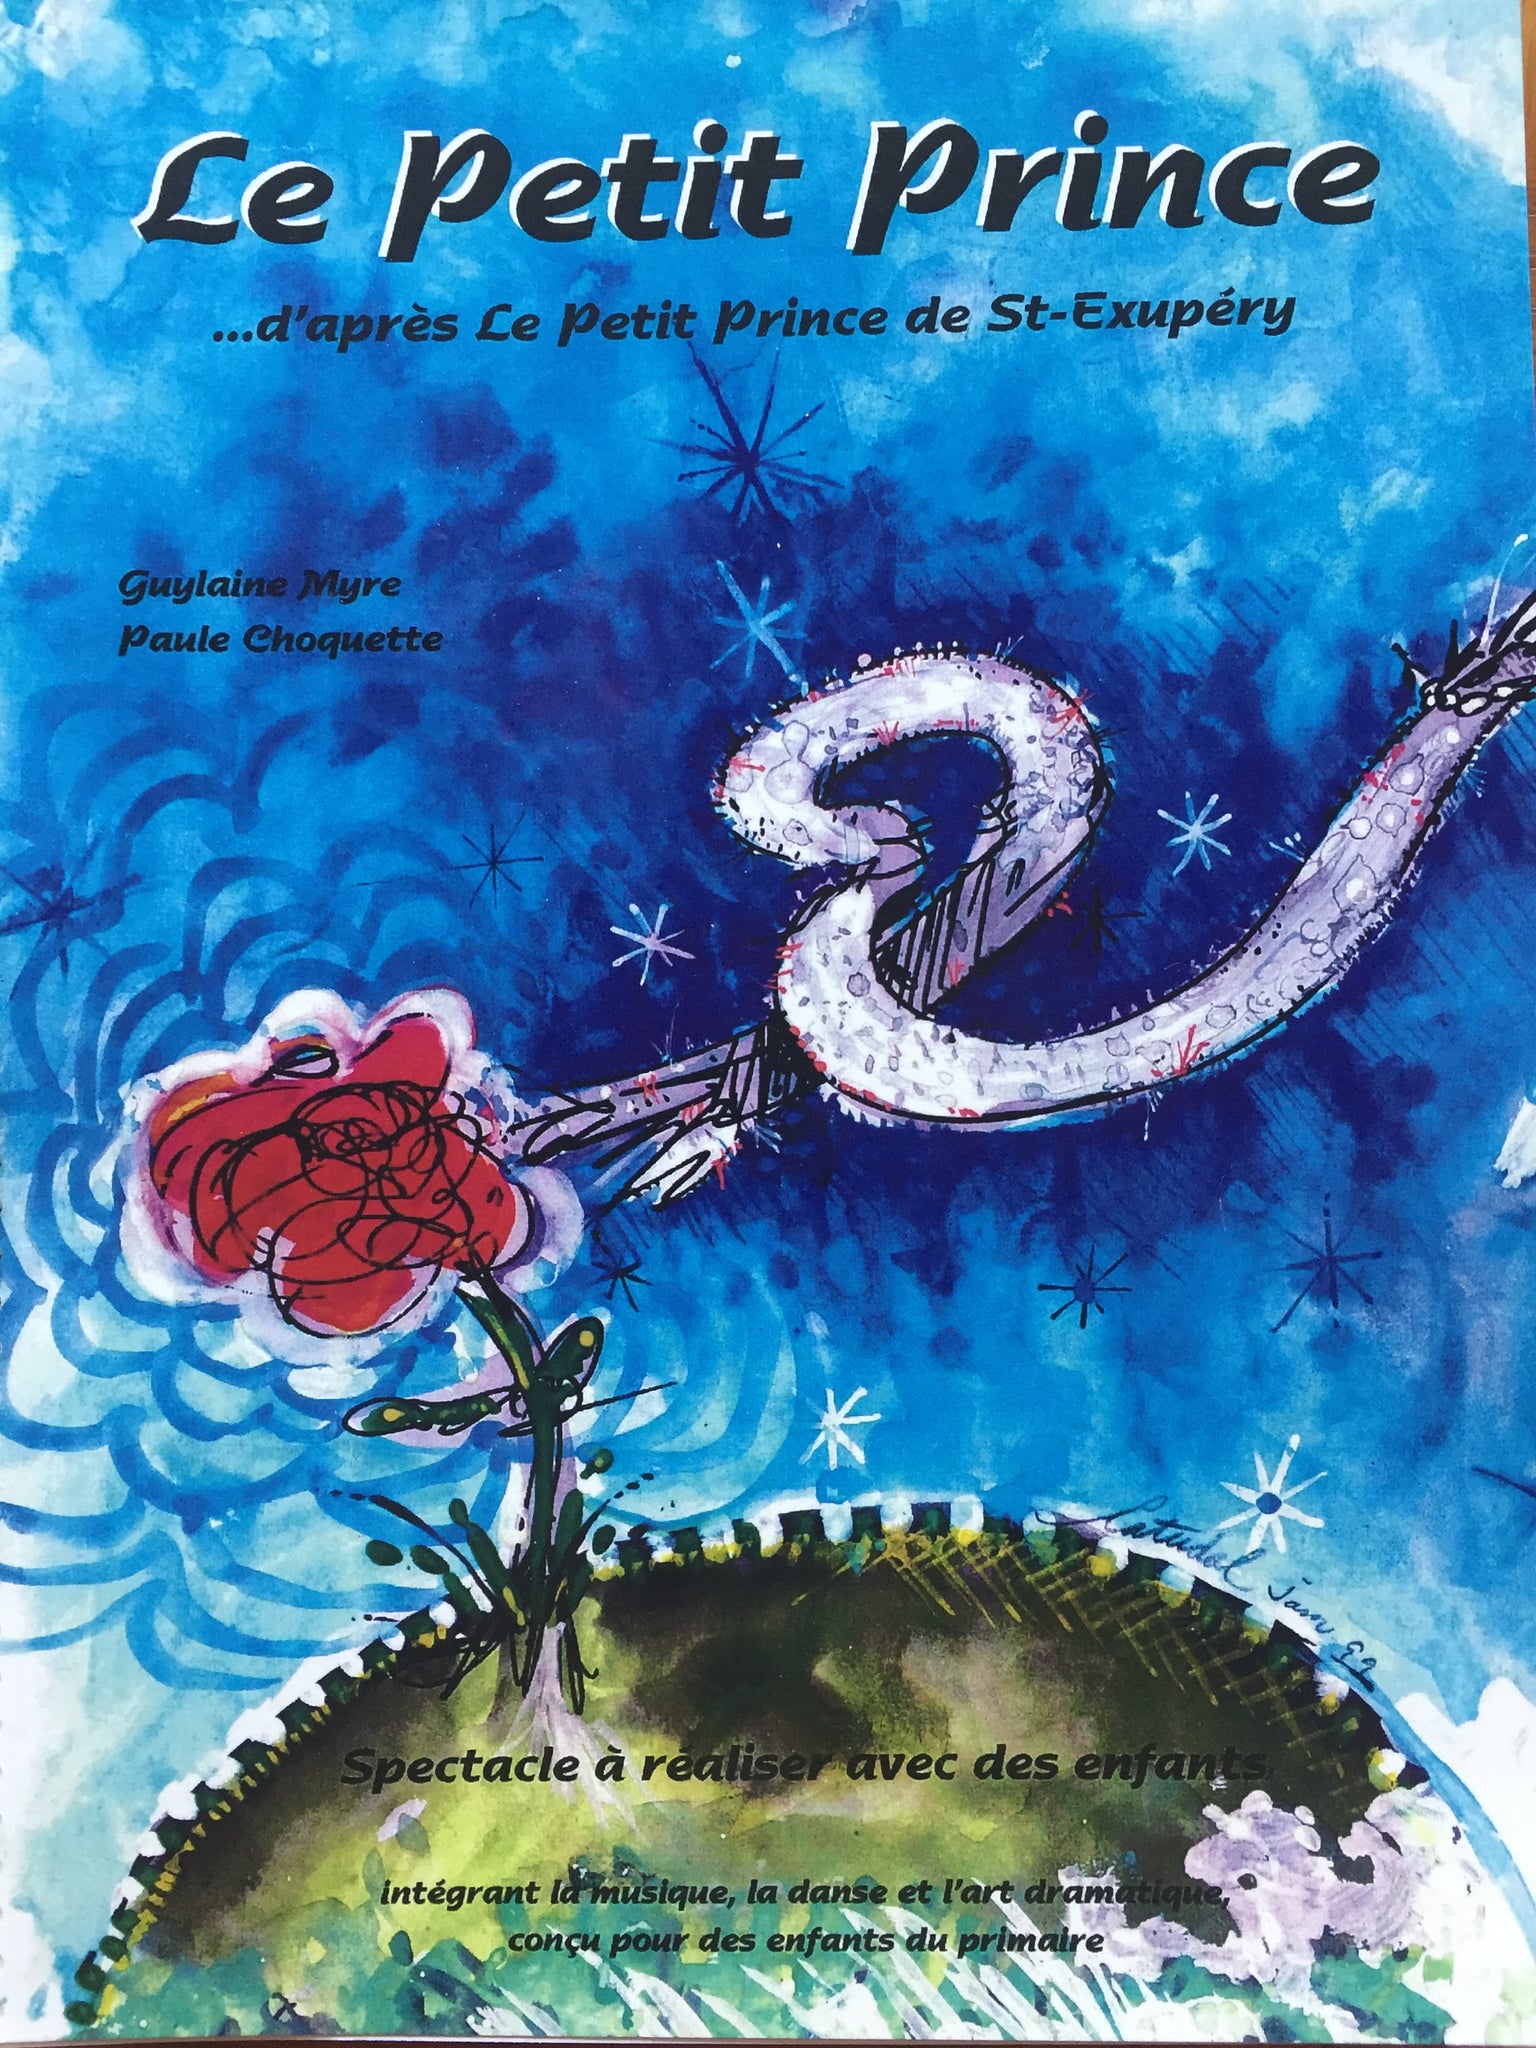 Version vidéo de la comédie musicale Le petit prince créée par ORFF en spectacle, Guylaine Myre